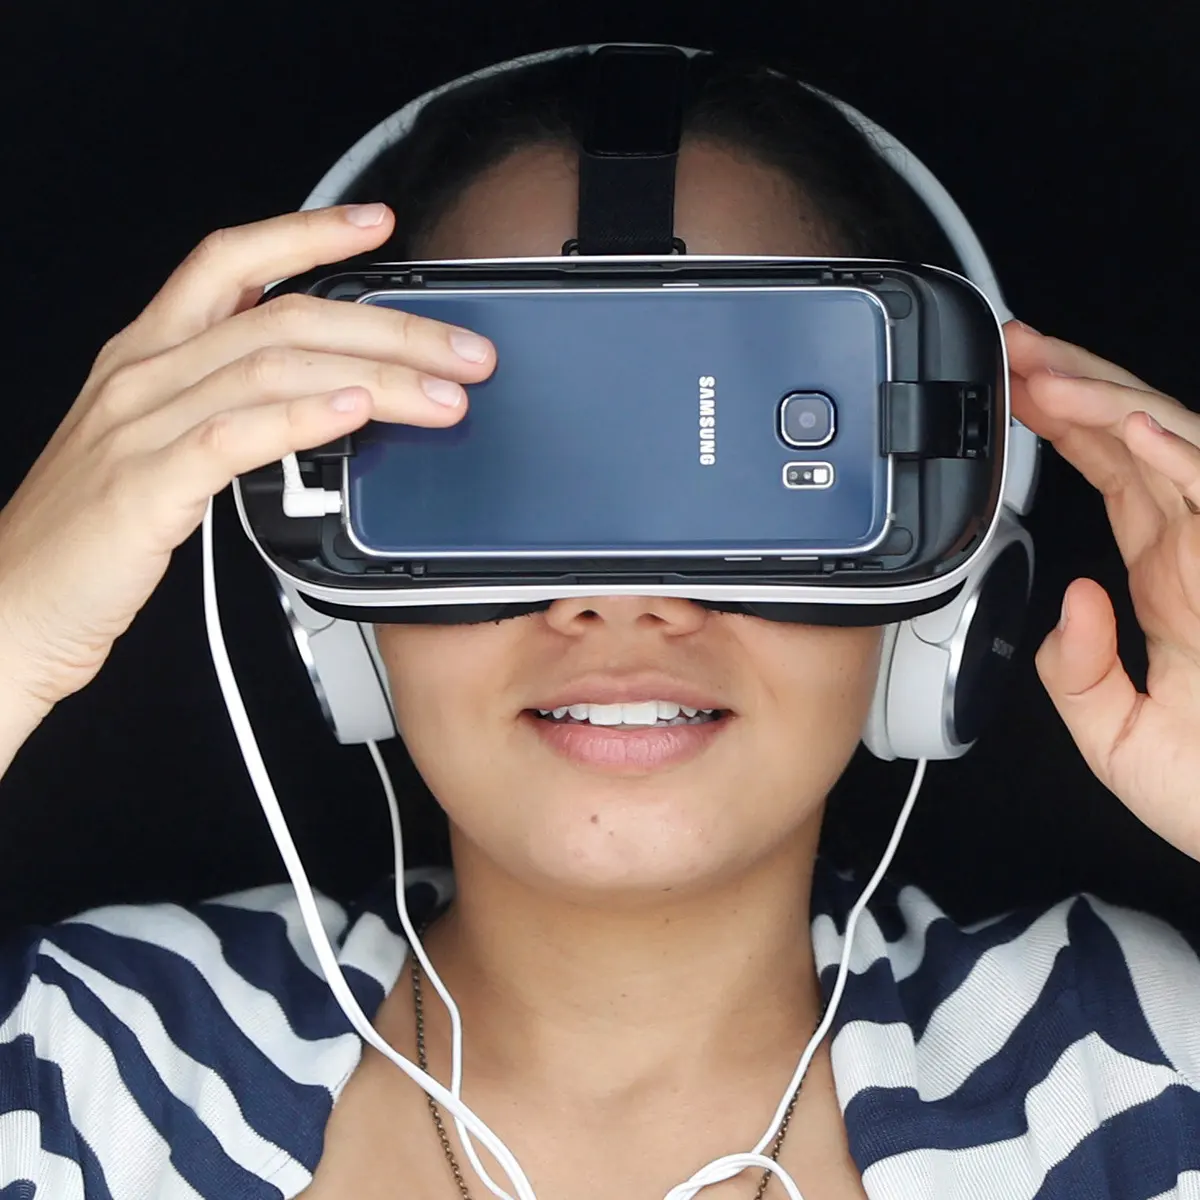 图片中是一位女士戴着虚拟现实头盔和耳机，似乎正在体验虚拟现实内容。她穿着条纹衣服，表情放松。